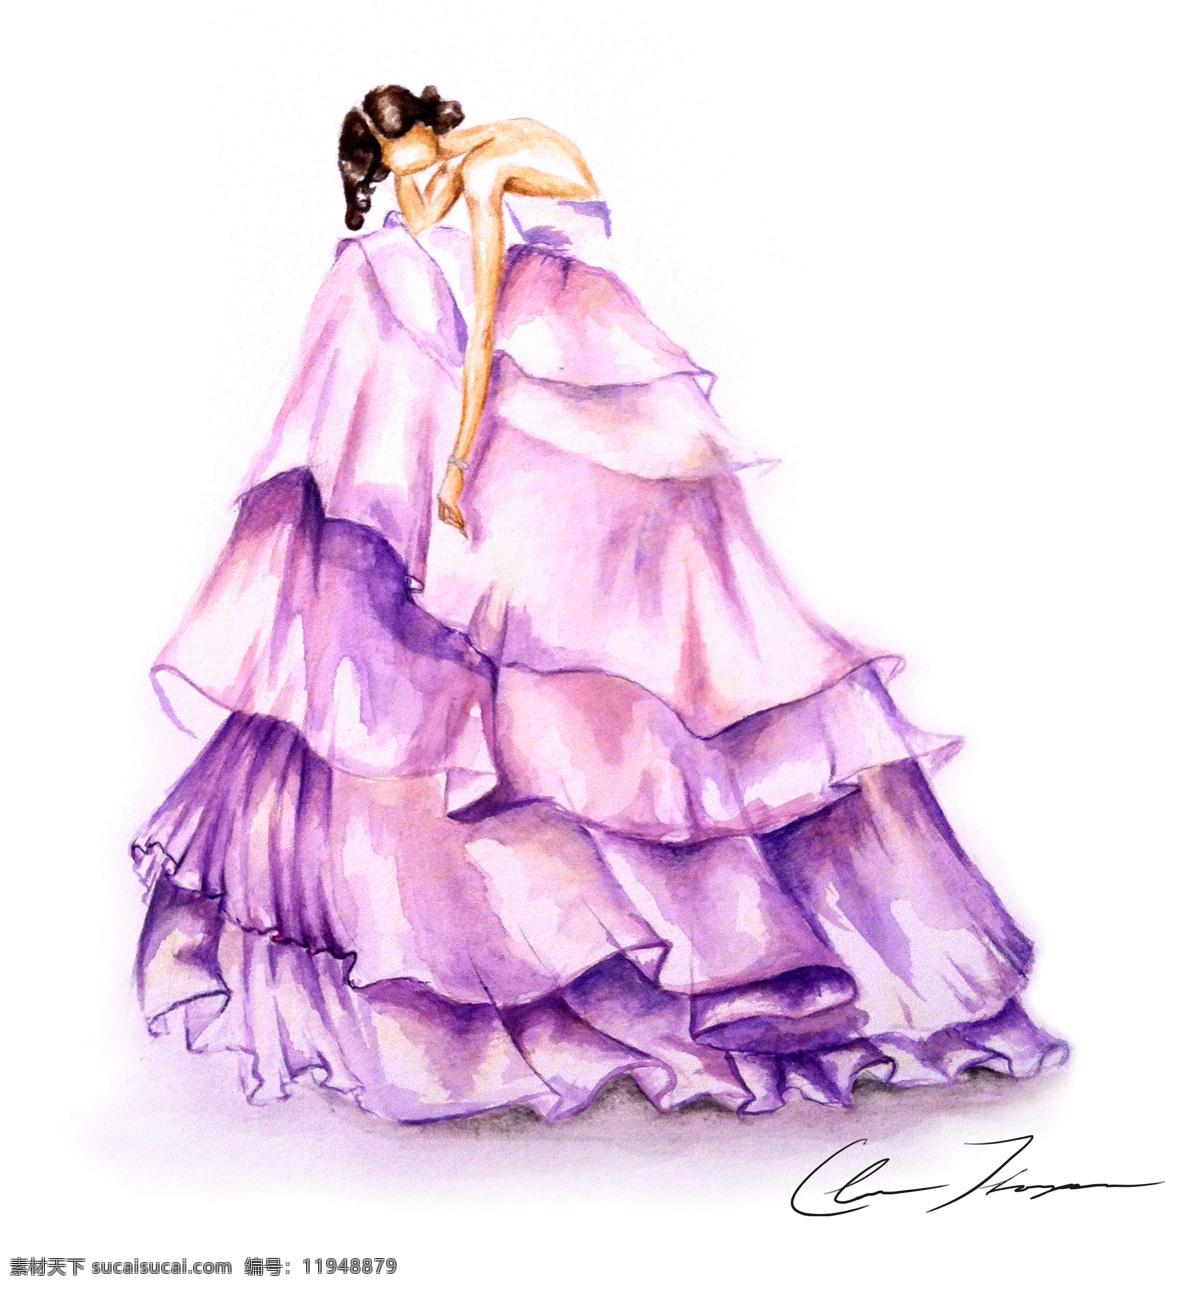 紫色 长裙 礼服 设计图 服装设计 时尚女装 职业女装 职业装 女装设计 效果图 短裙 衬衫 服装 服装效果图 连衣裙